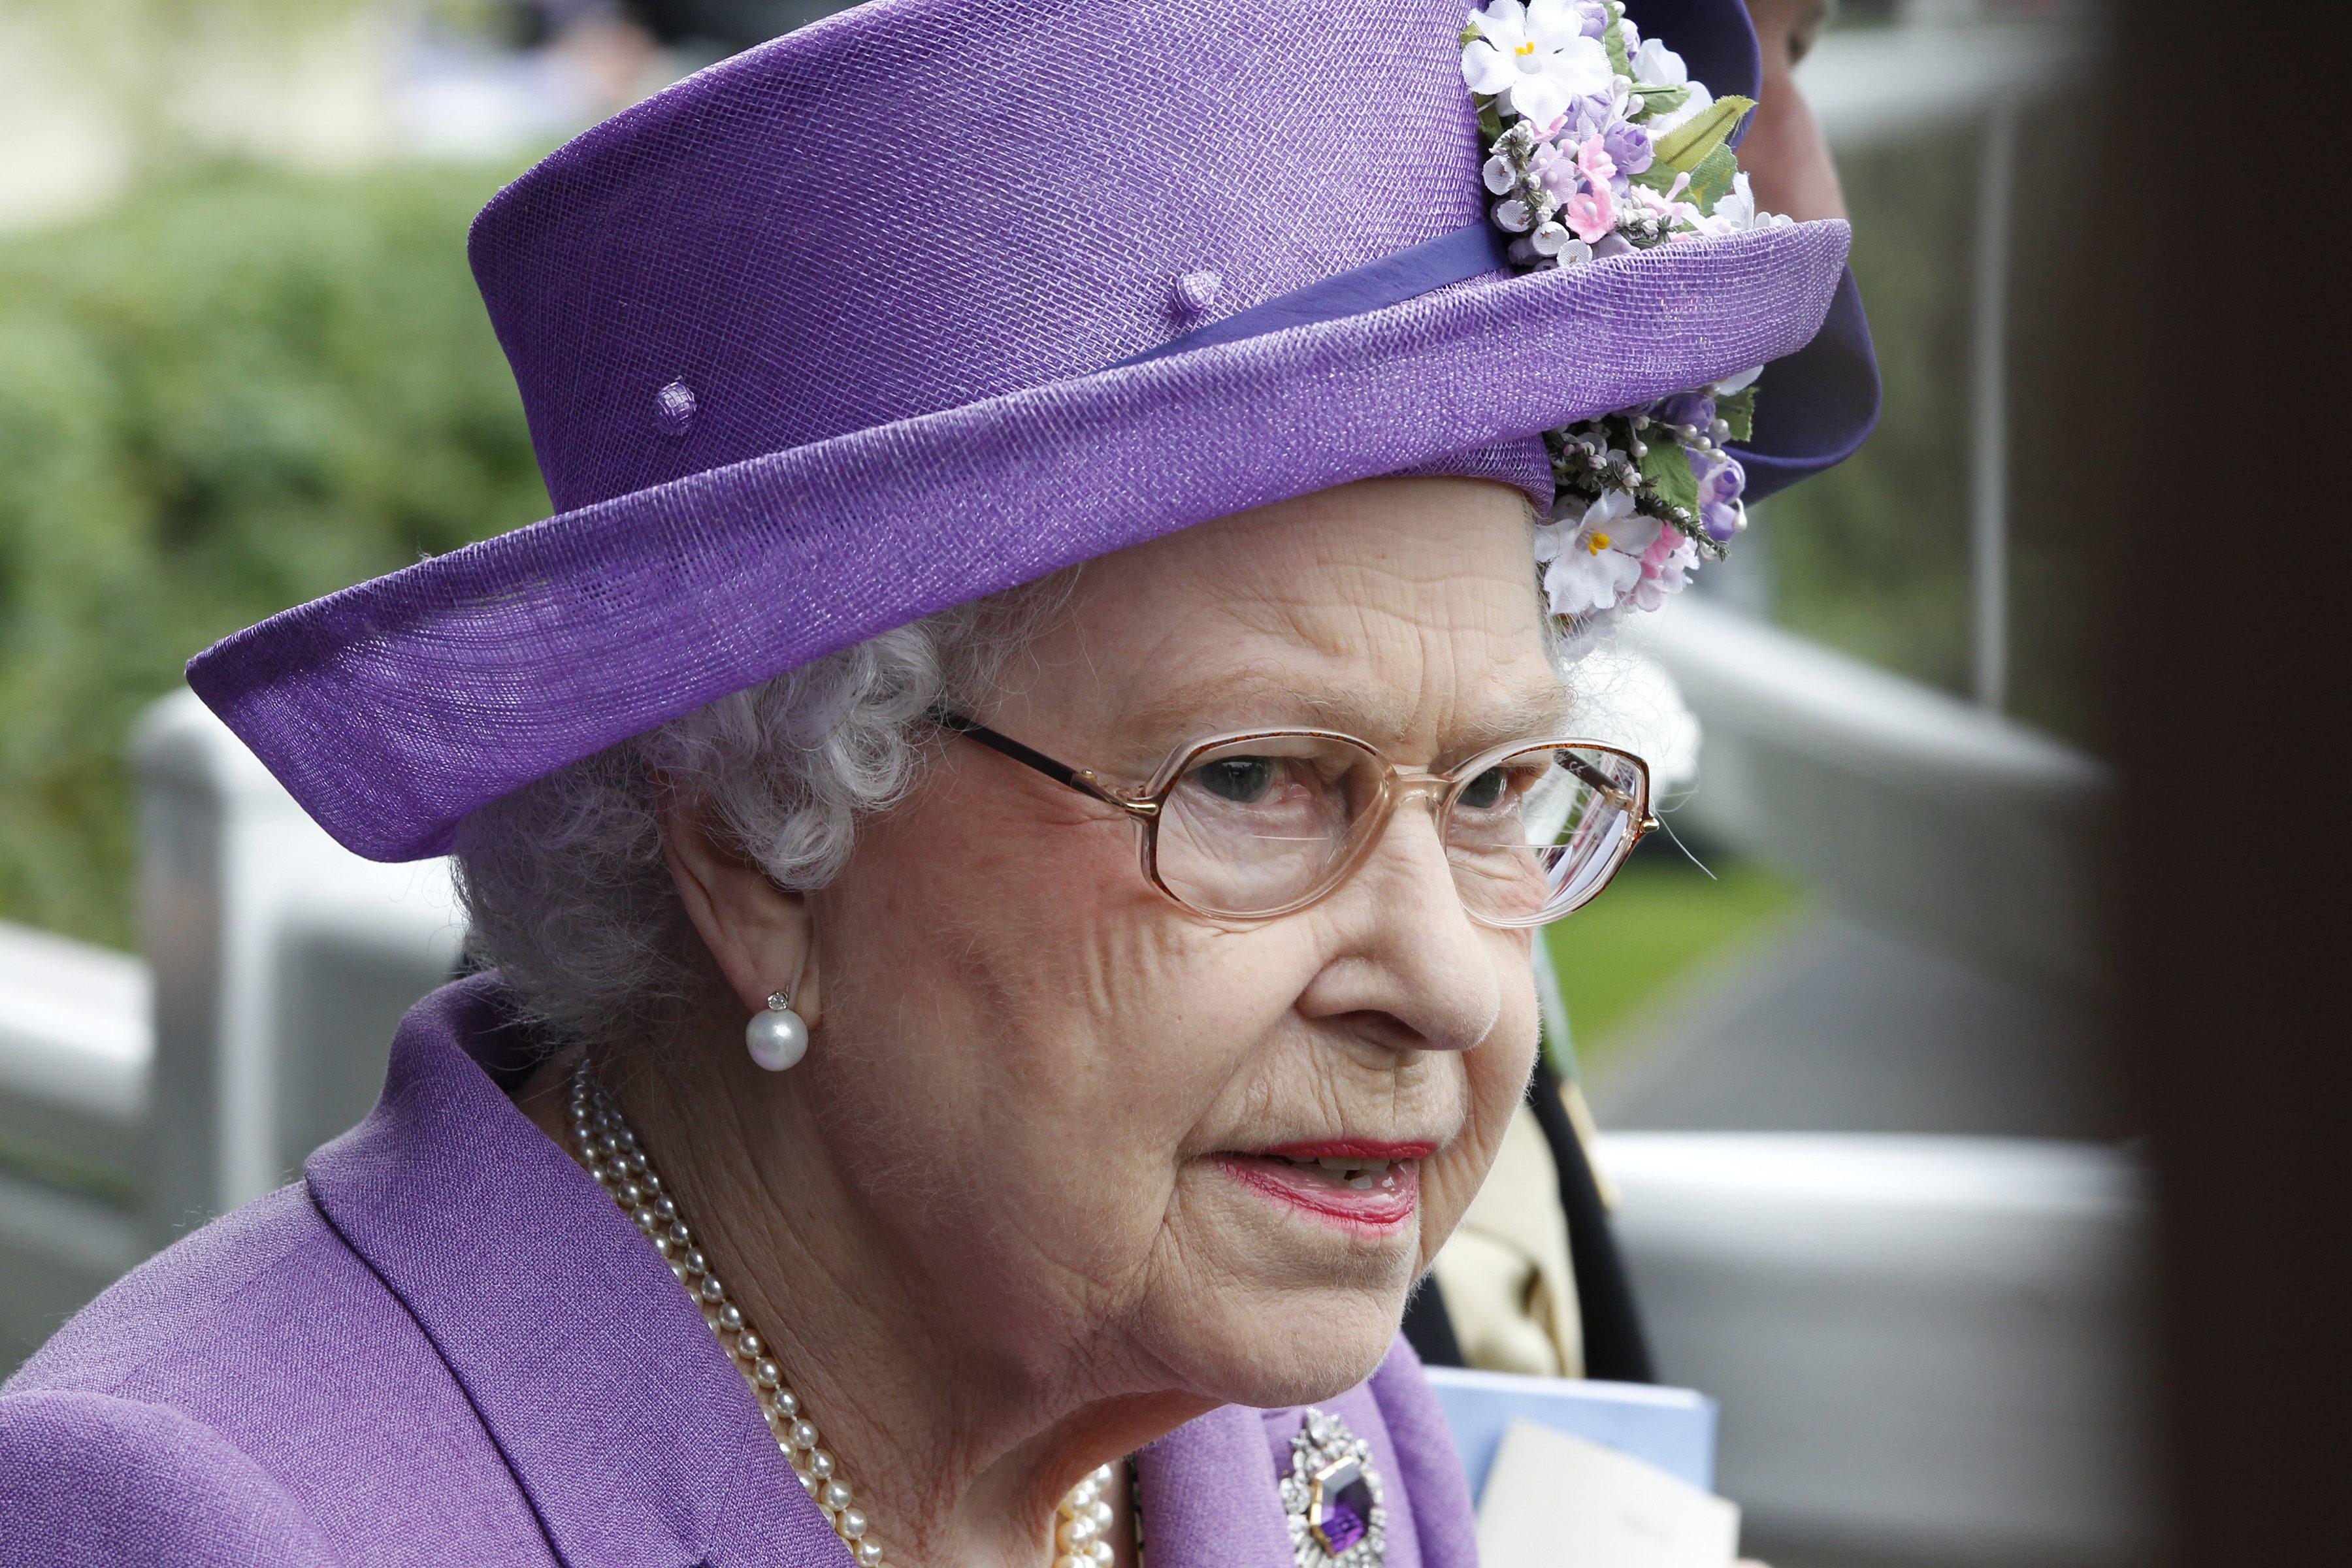 La Regina Elisabetta II , con i suoi 88 anni è la più anziana in lista, al 35esimo posto (Infophoto)